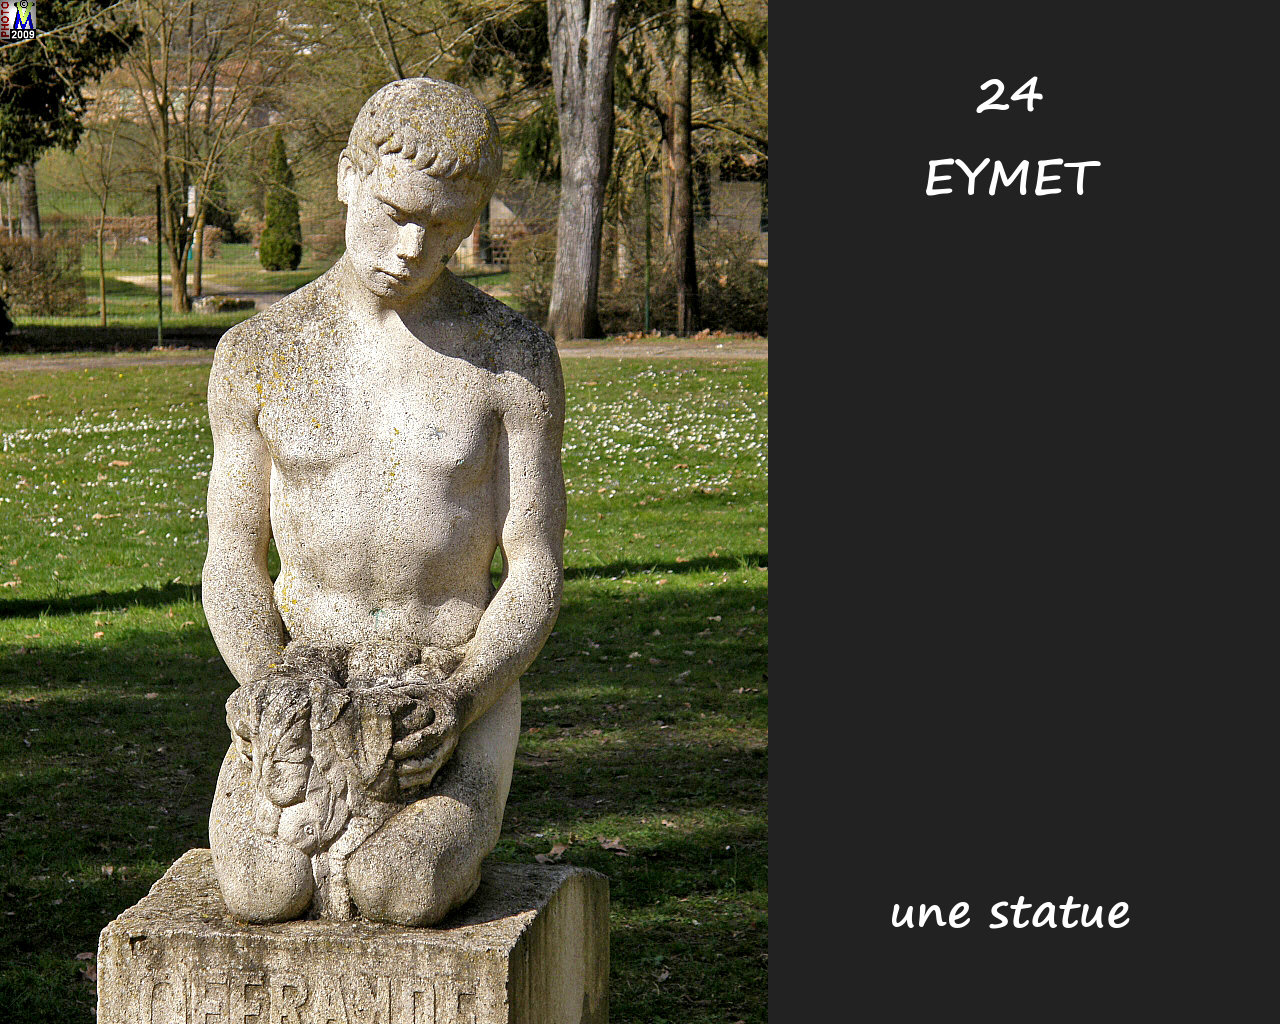 24EYMET_statue_100.jpg